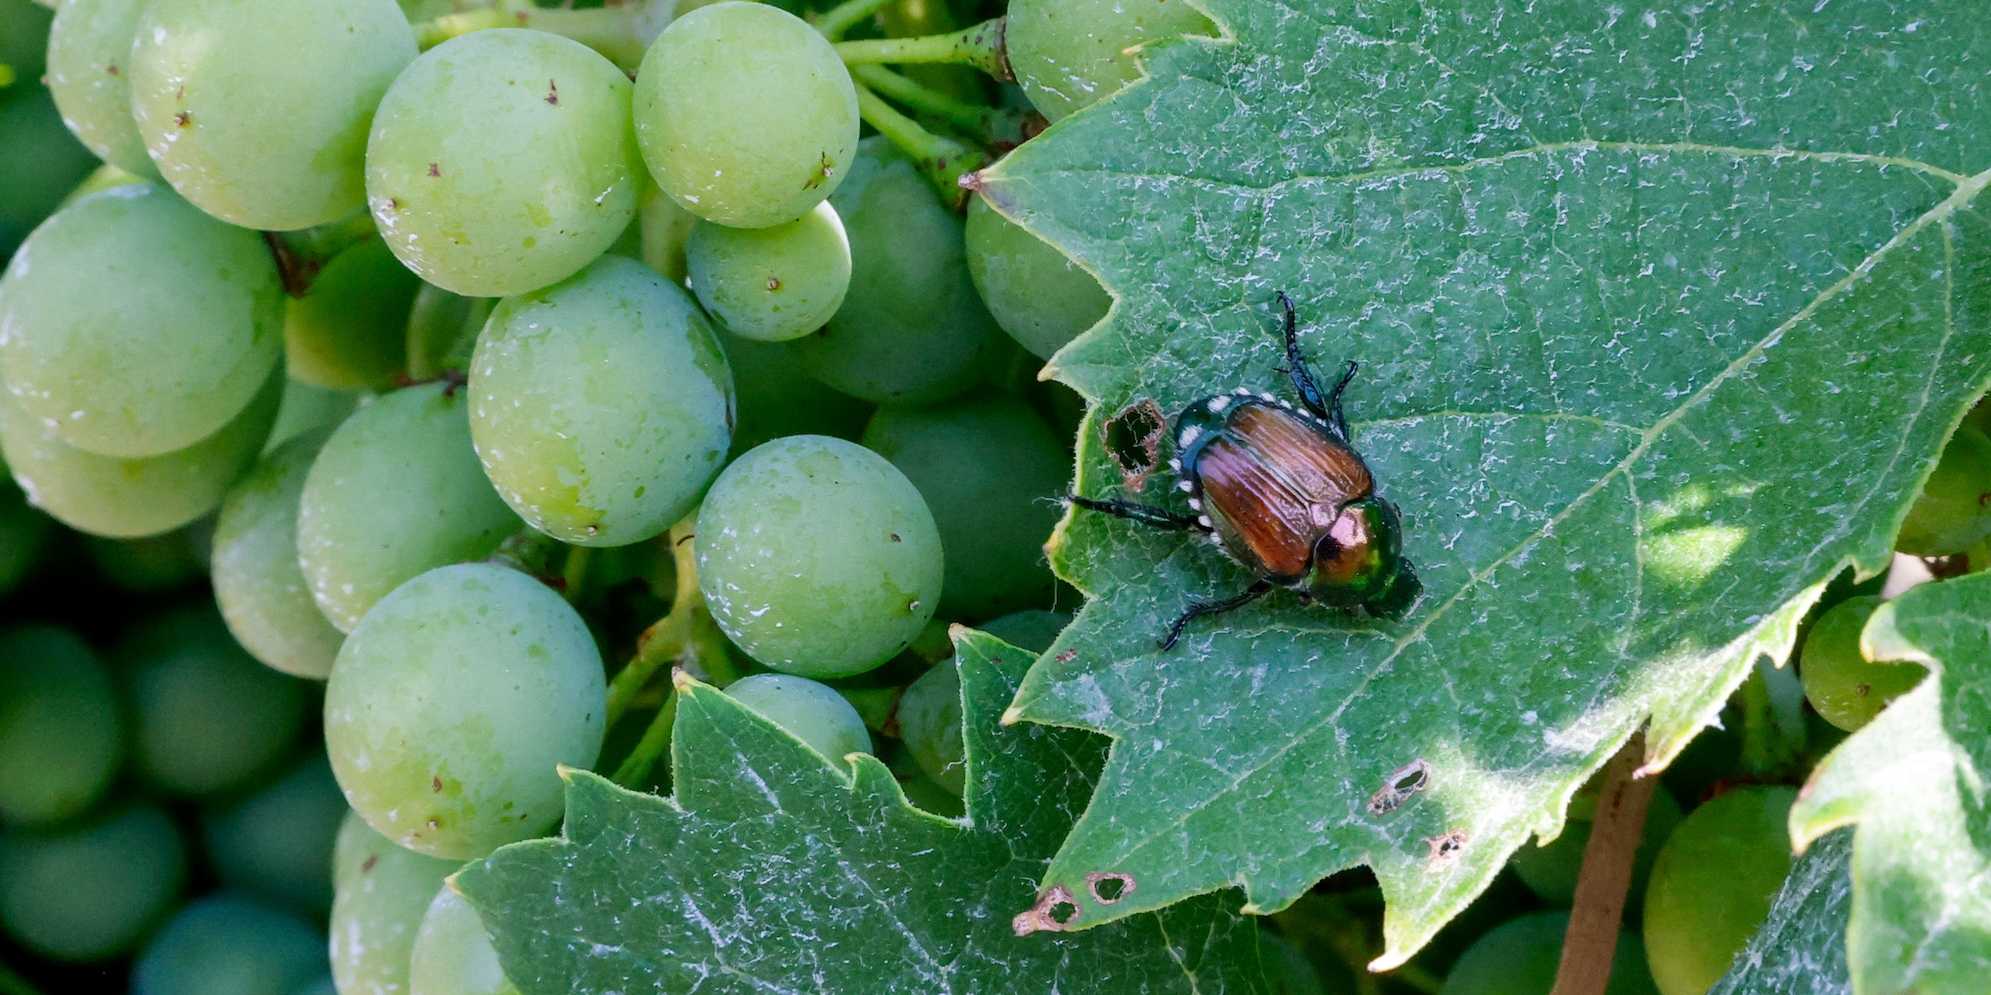 Japenese Beetle on grapevine.